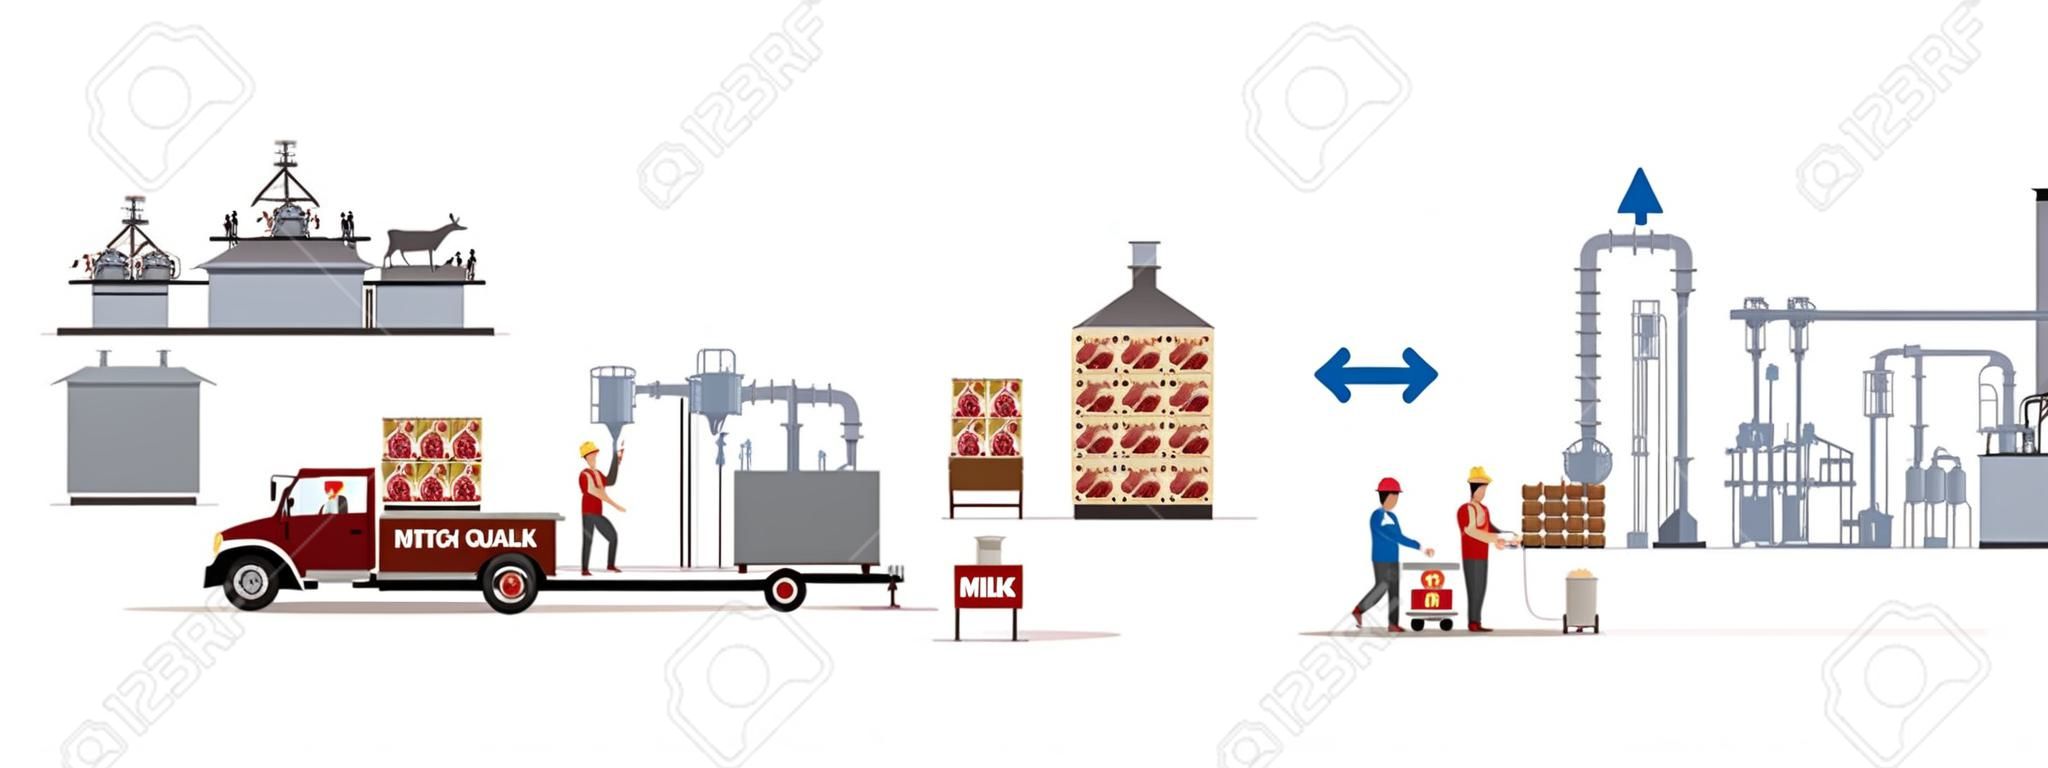 Milch- und Fleischfabrik mit Automaten und Arbeitern. Vektor-illustration